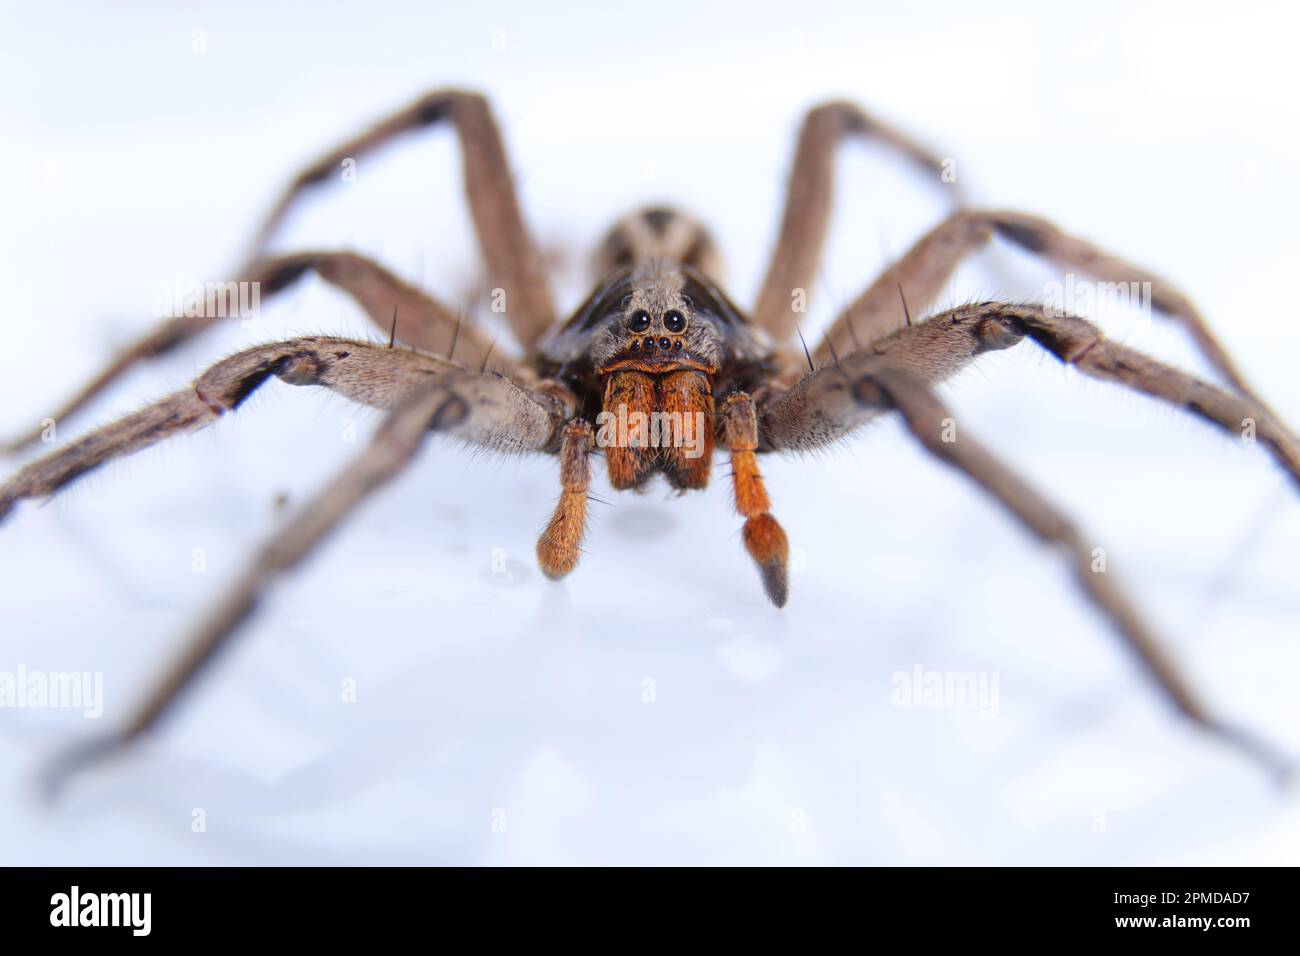 Aranha em aproximação macro / Macro close-up spider Stock Photo